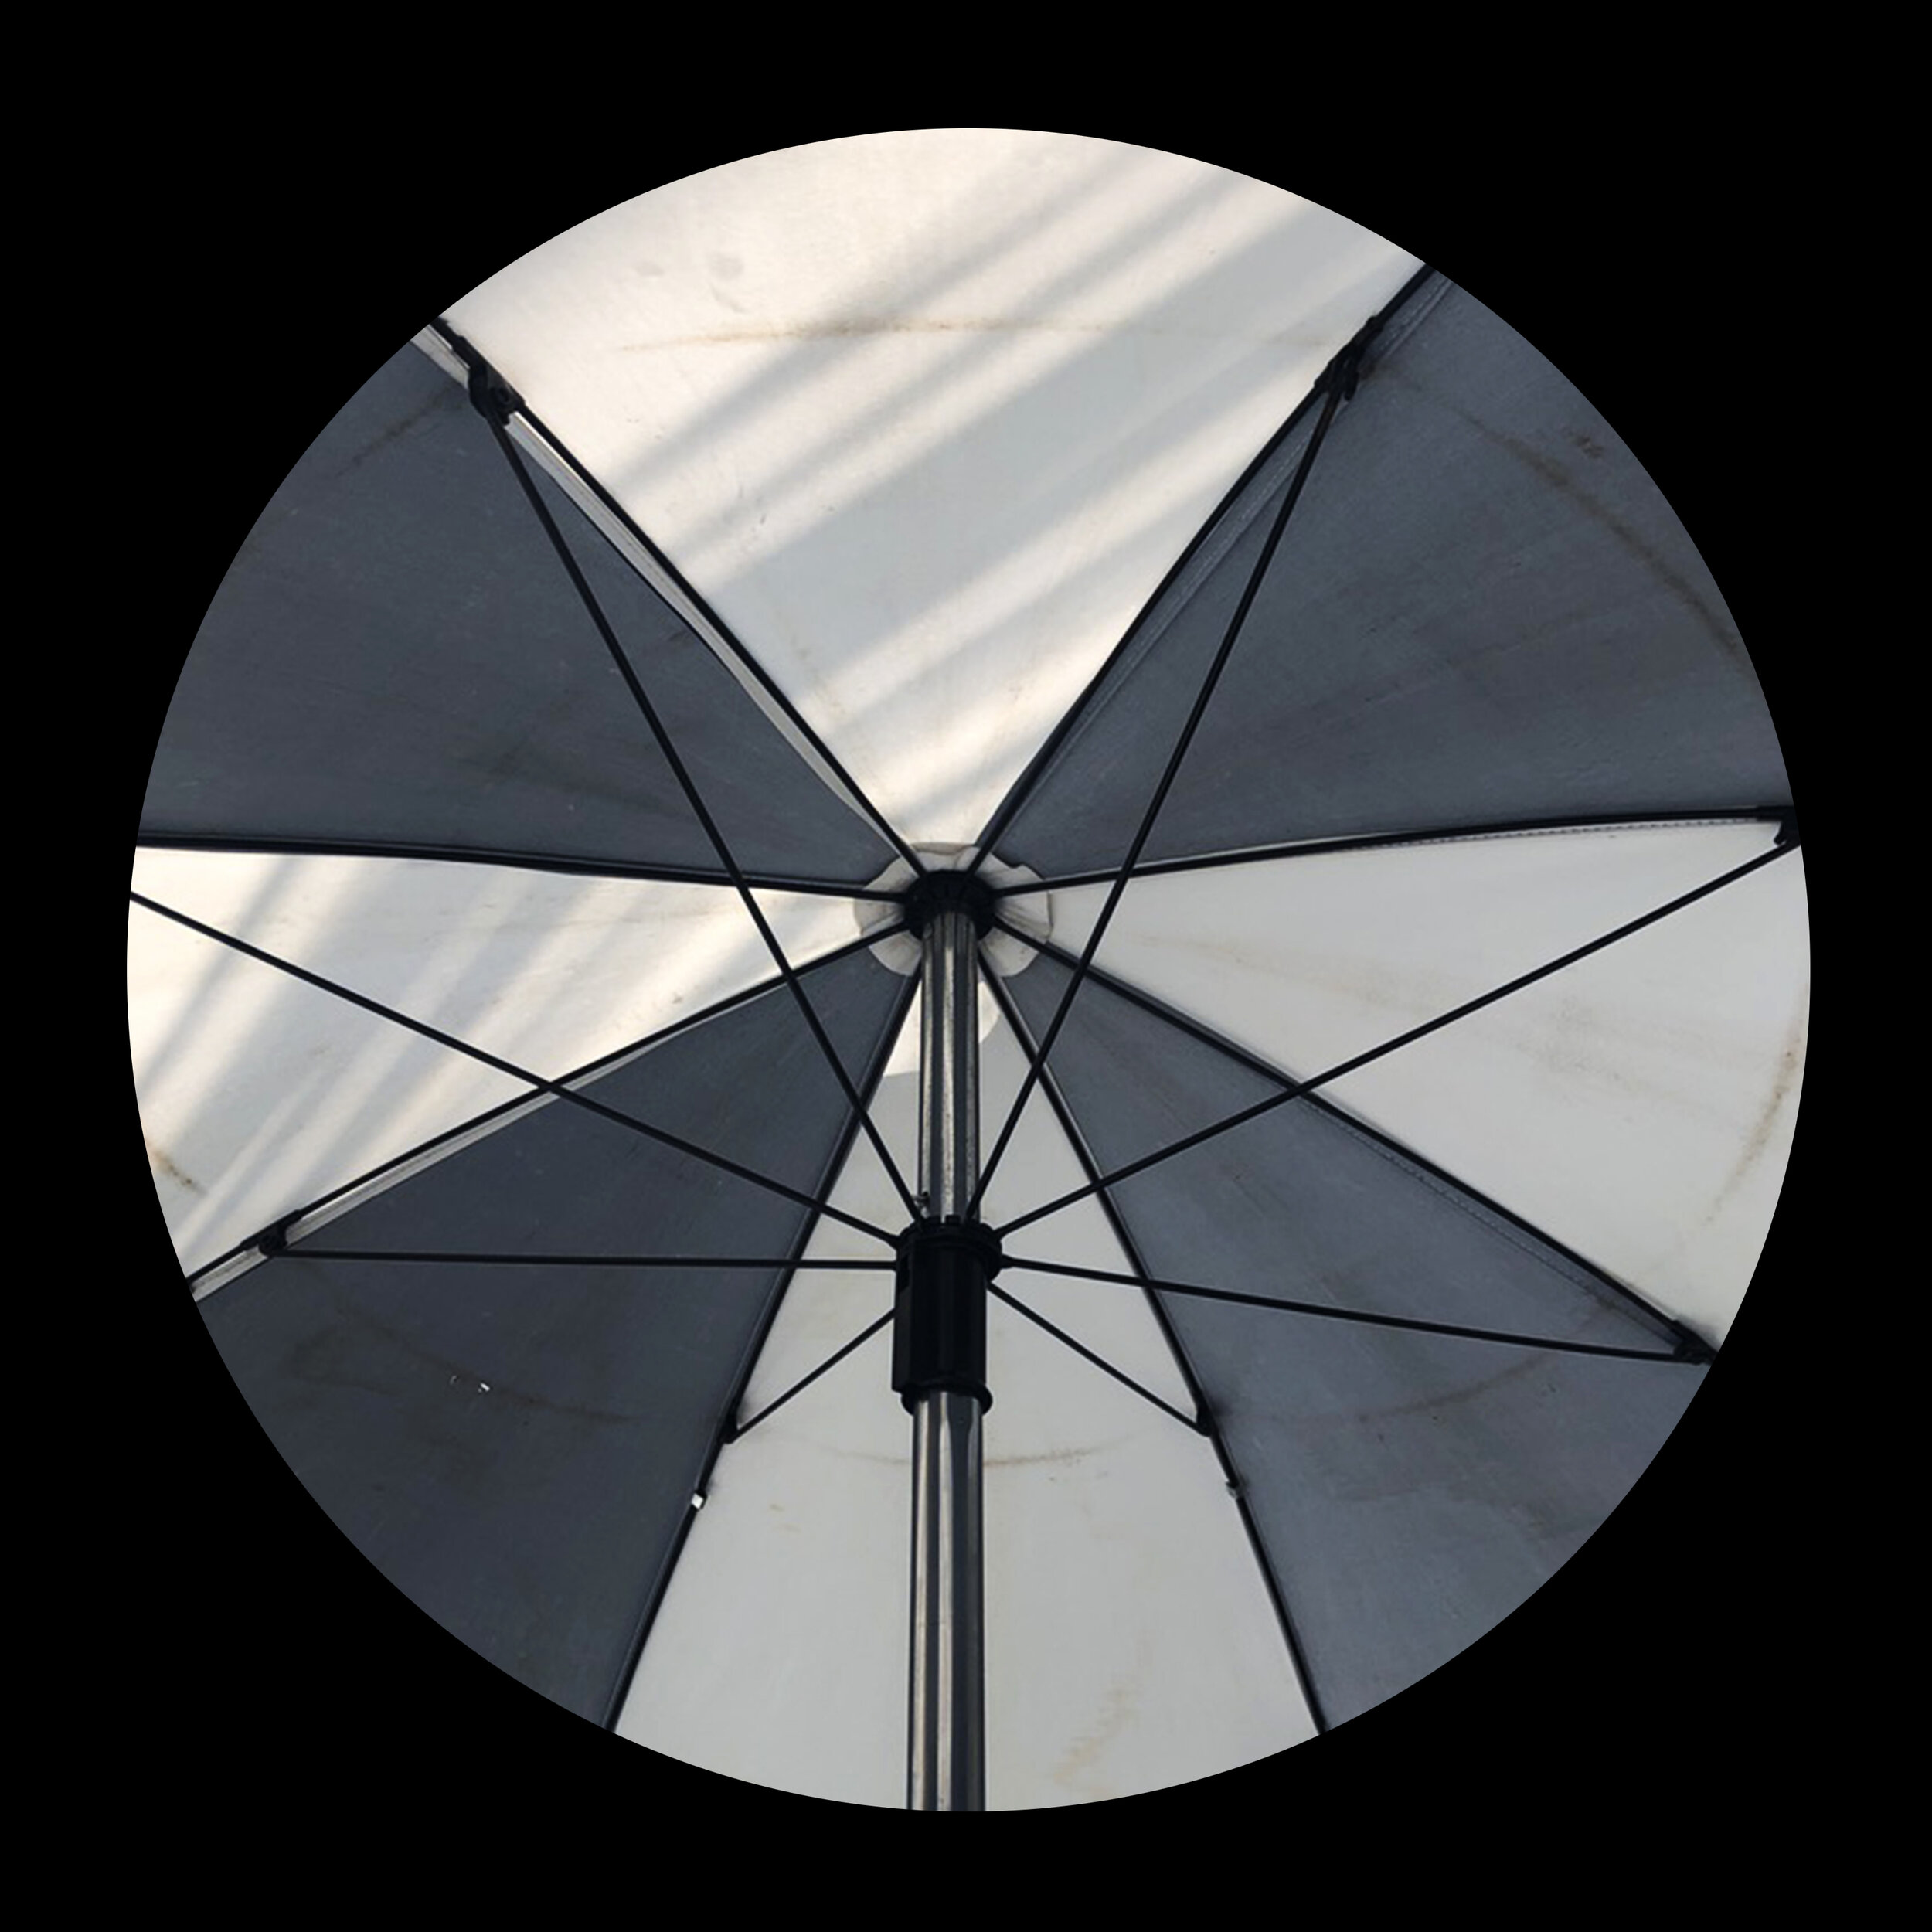 umbrellas_inner_05.jpg